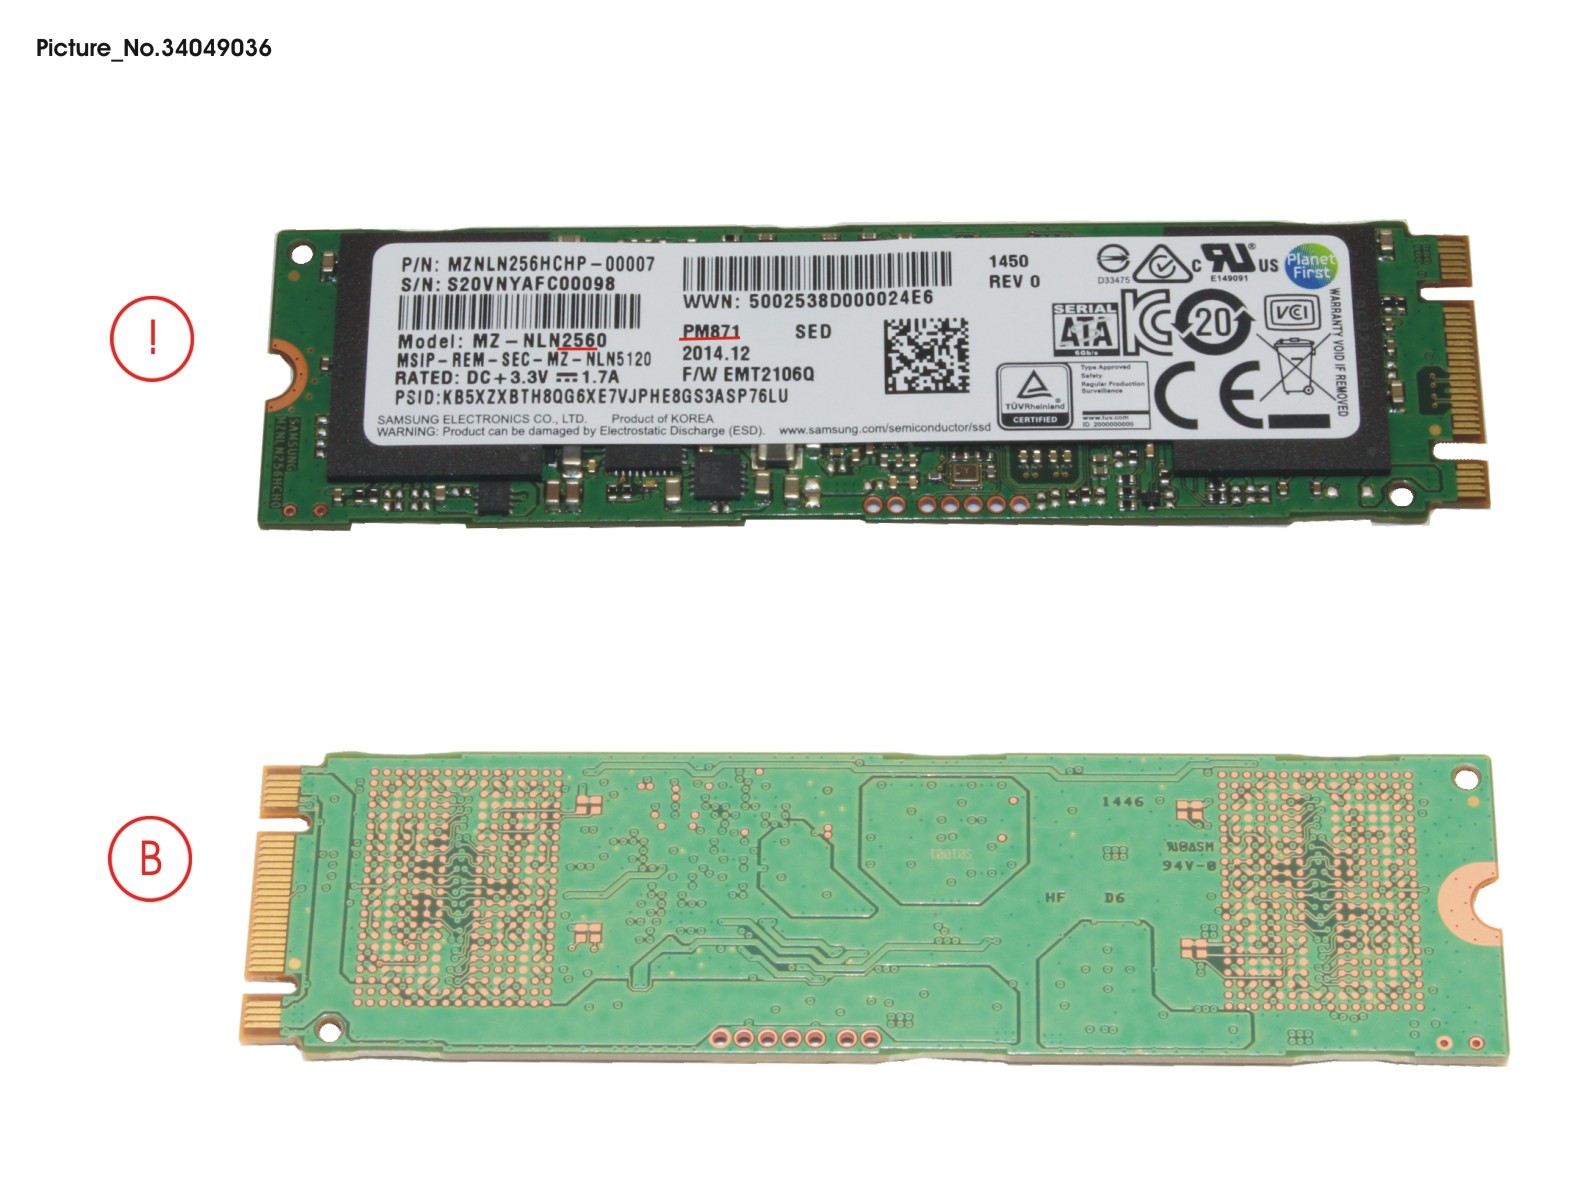 SSD S3 M.2 2280 PM871 256GB (OPAL)